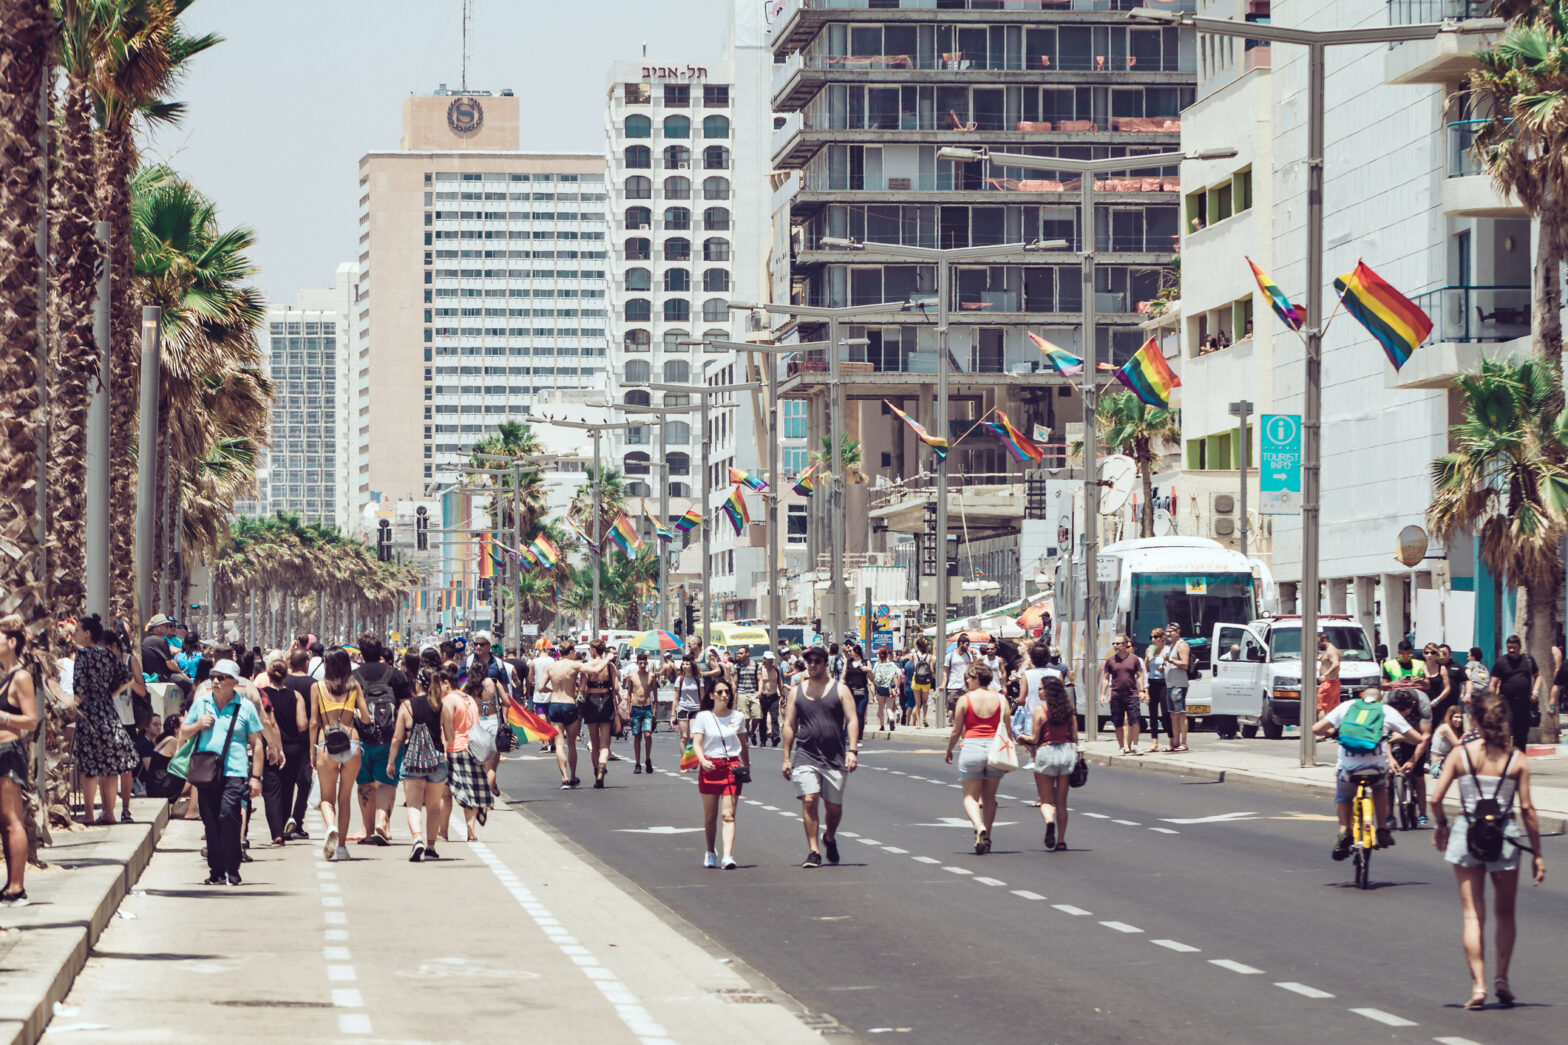 People walking on Herbert Samuel street next to Mediterranean beach towards Pride parade marching . Tel Aviv. Israel. June 2018